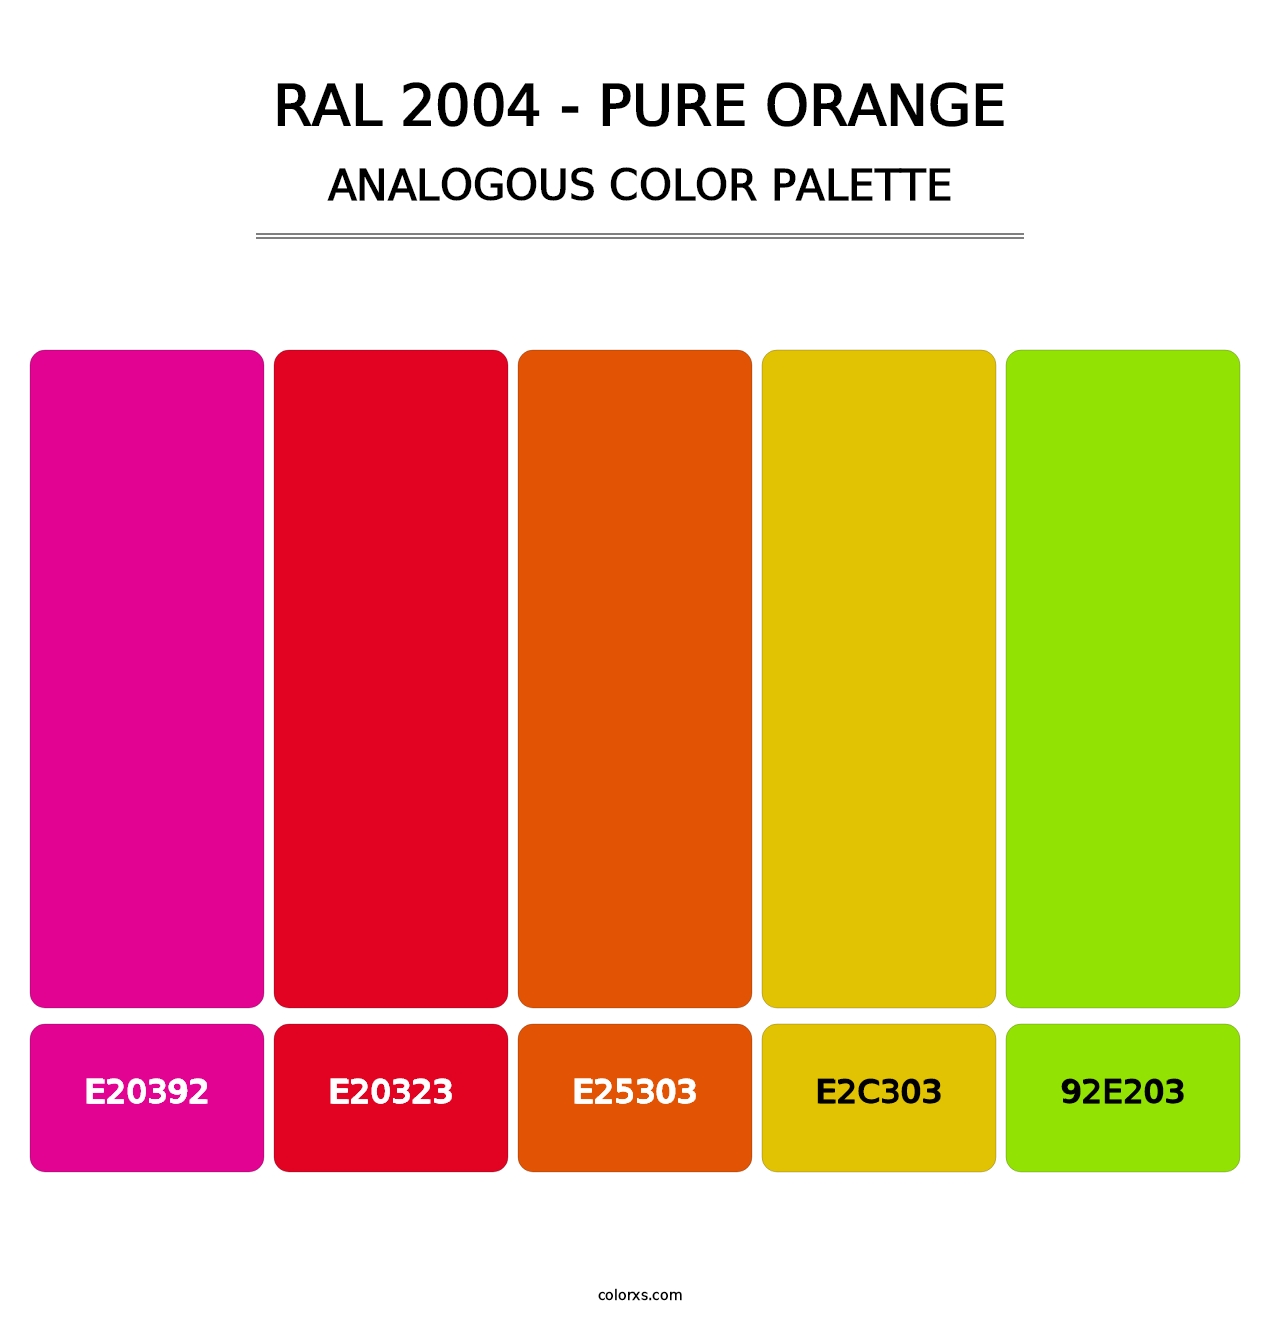 RAL 2004 - Pure Orange - Analogous Color Palette